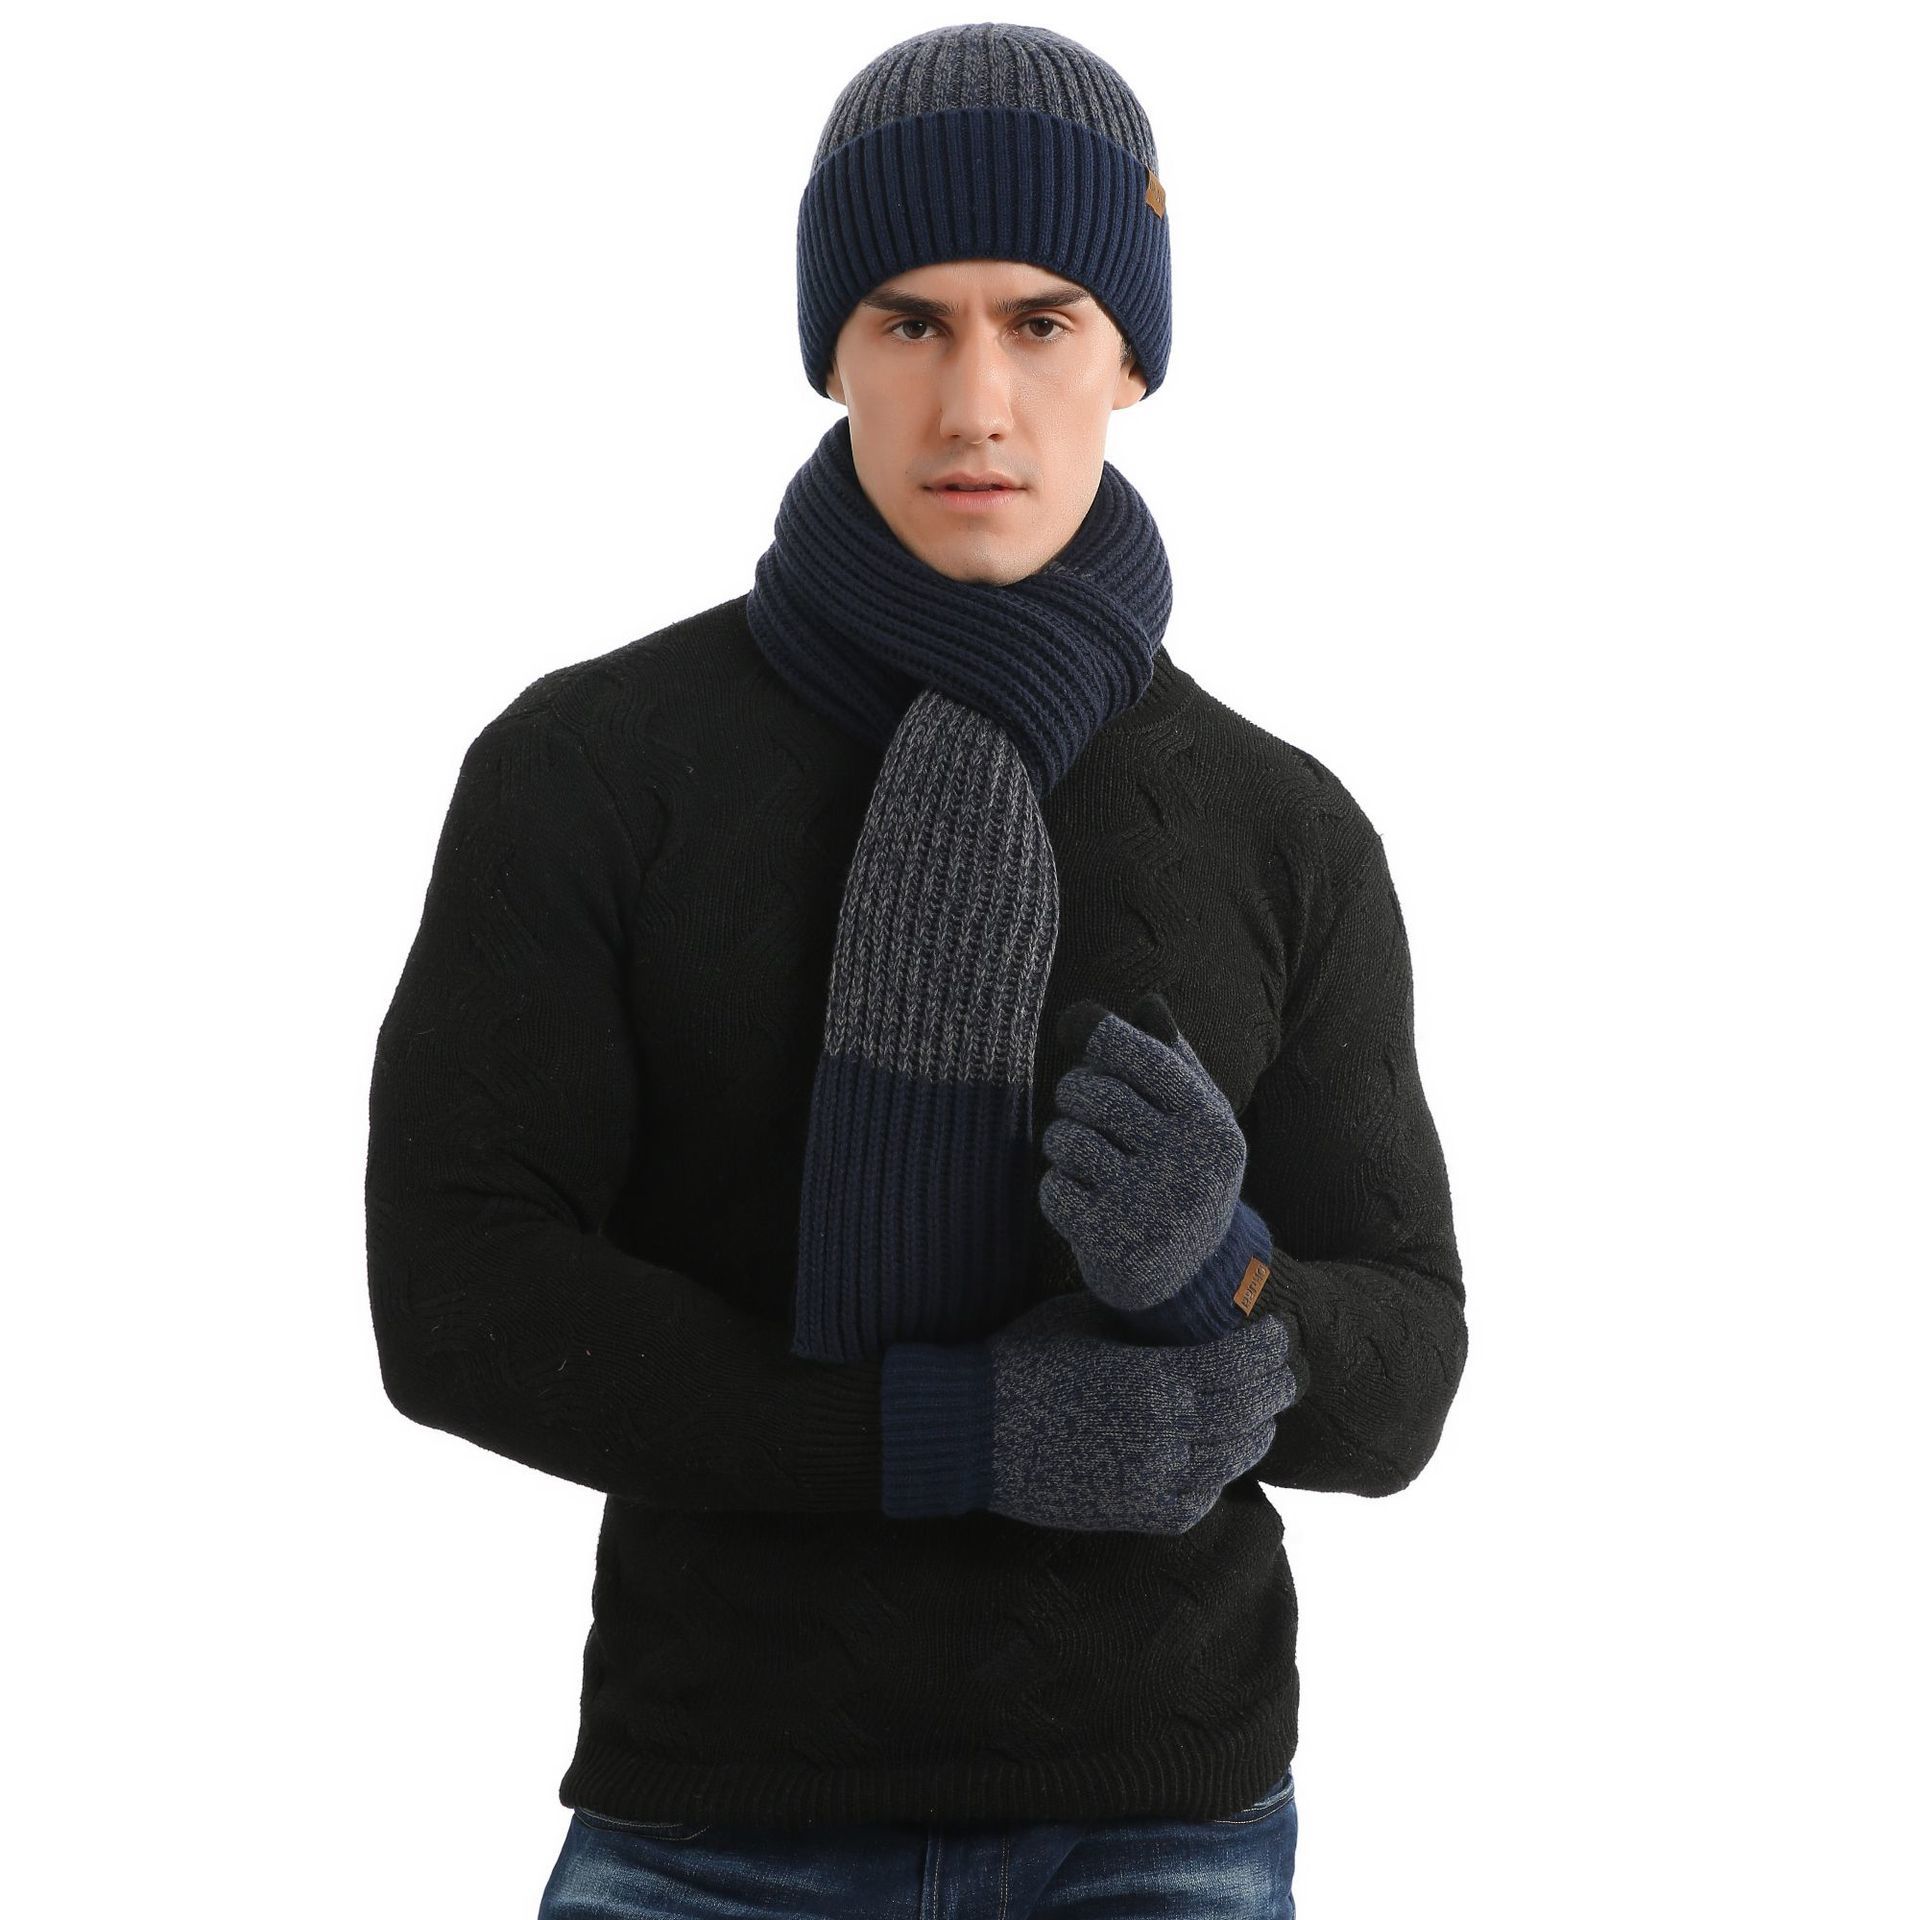 Xpeople blød fleece foret varm vinter mænd 3 stk strikket sæt strik hat lang tørklæde touch screen handsker sæt matchende vinter sæt